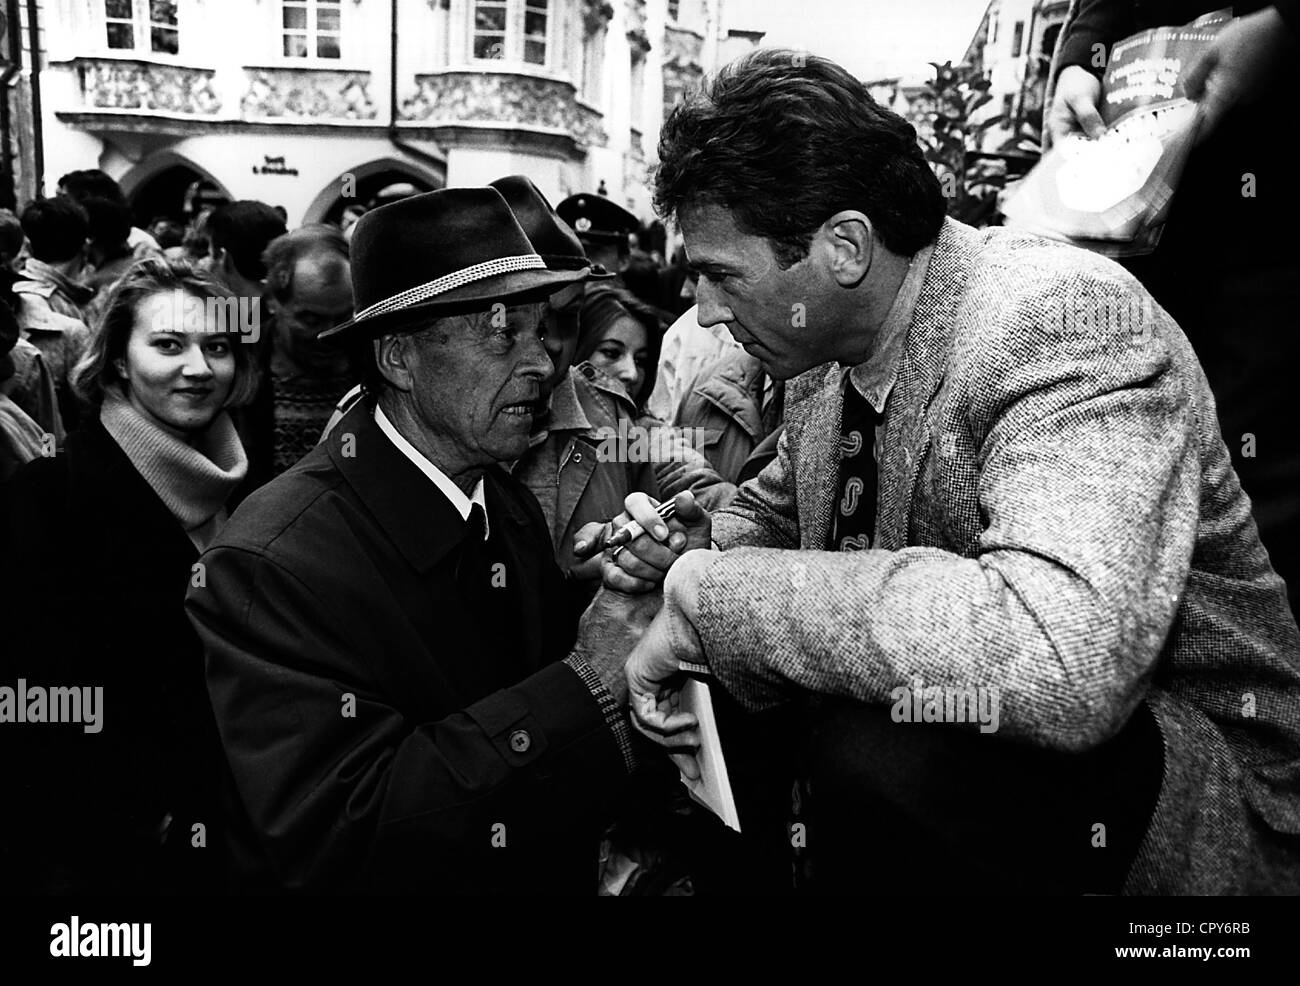 Haider, Joerg, 26.1.1950 - 11.10.2008, politico austriaco (Partito della libertà d'Austria), a metà lunghezza, parlando con un vecchio, 1990s, Foto Stock